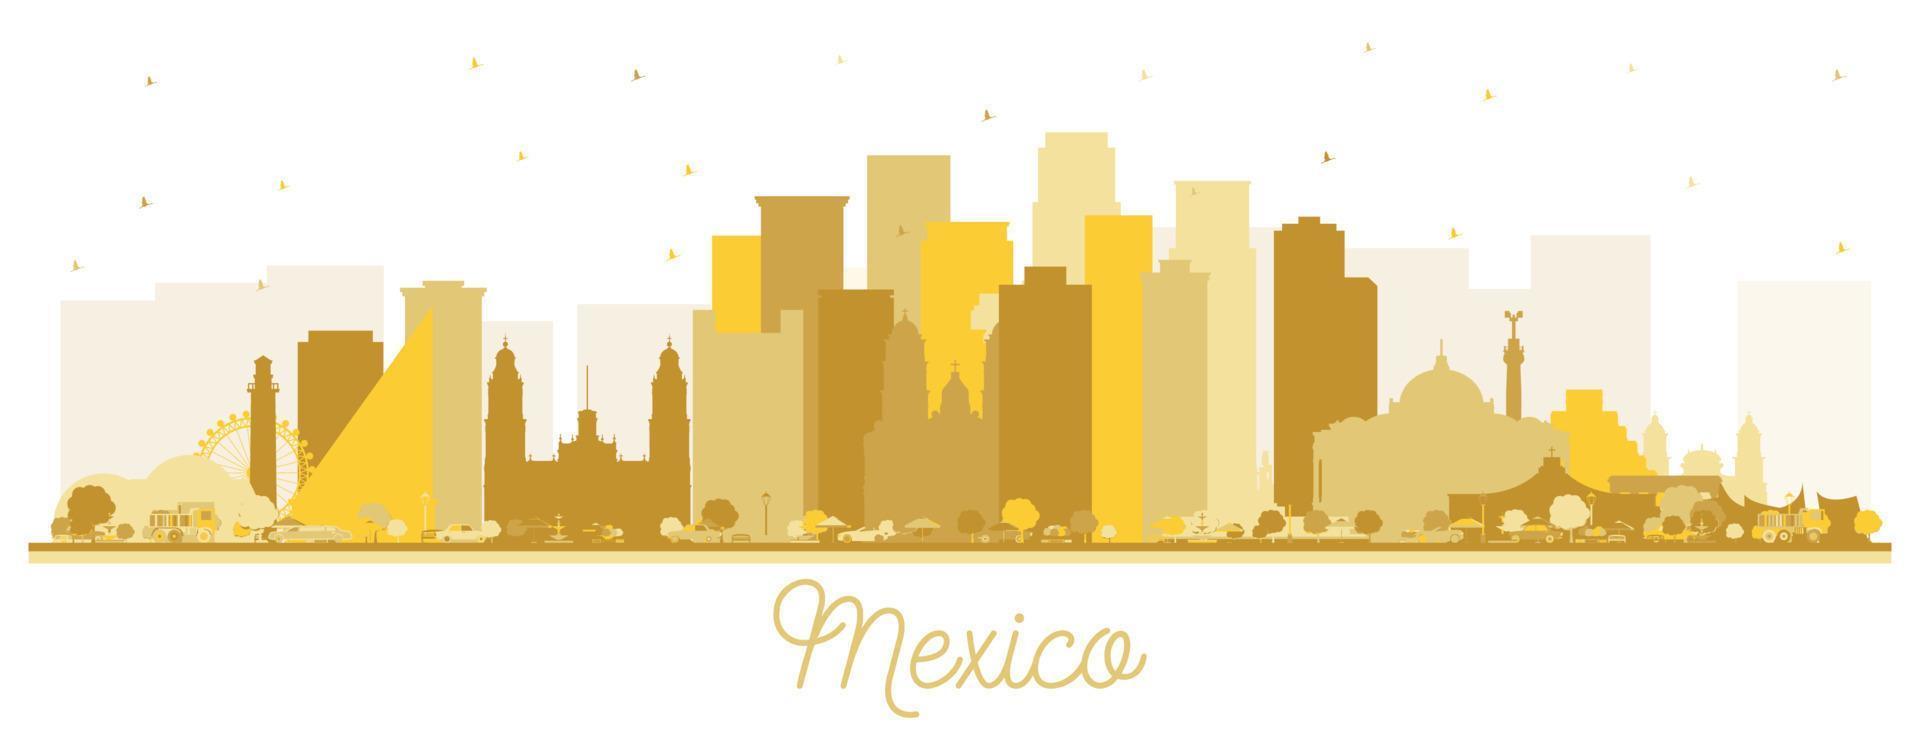 silhouette d'horizon du mexique avec des bâtiments dorés isolés sur blanc. vecteur